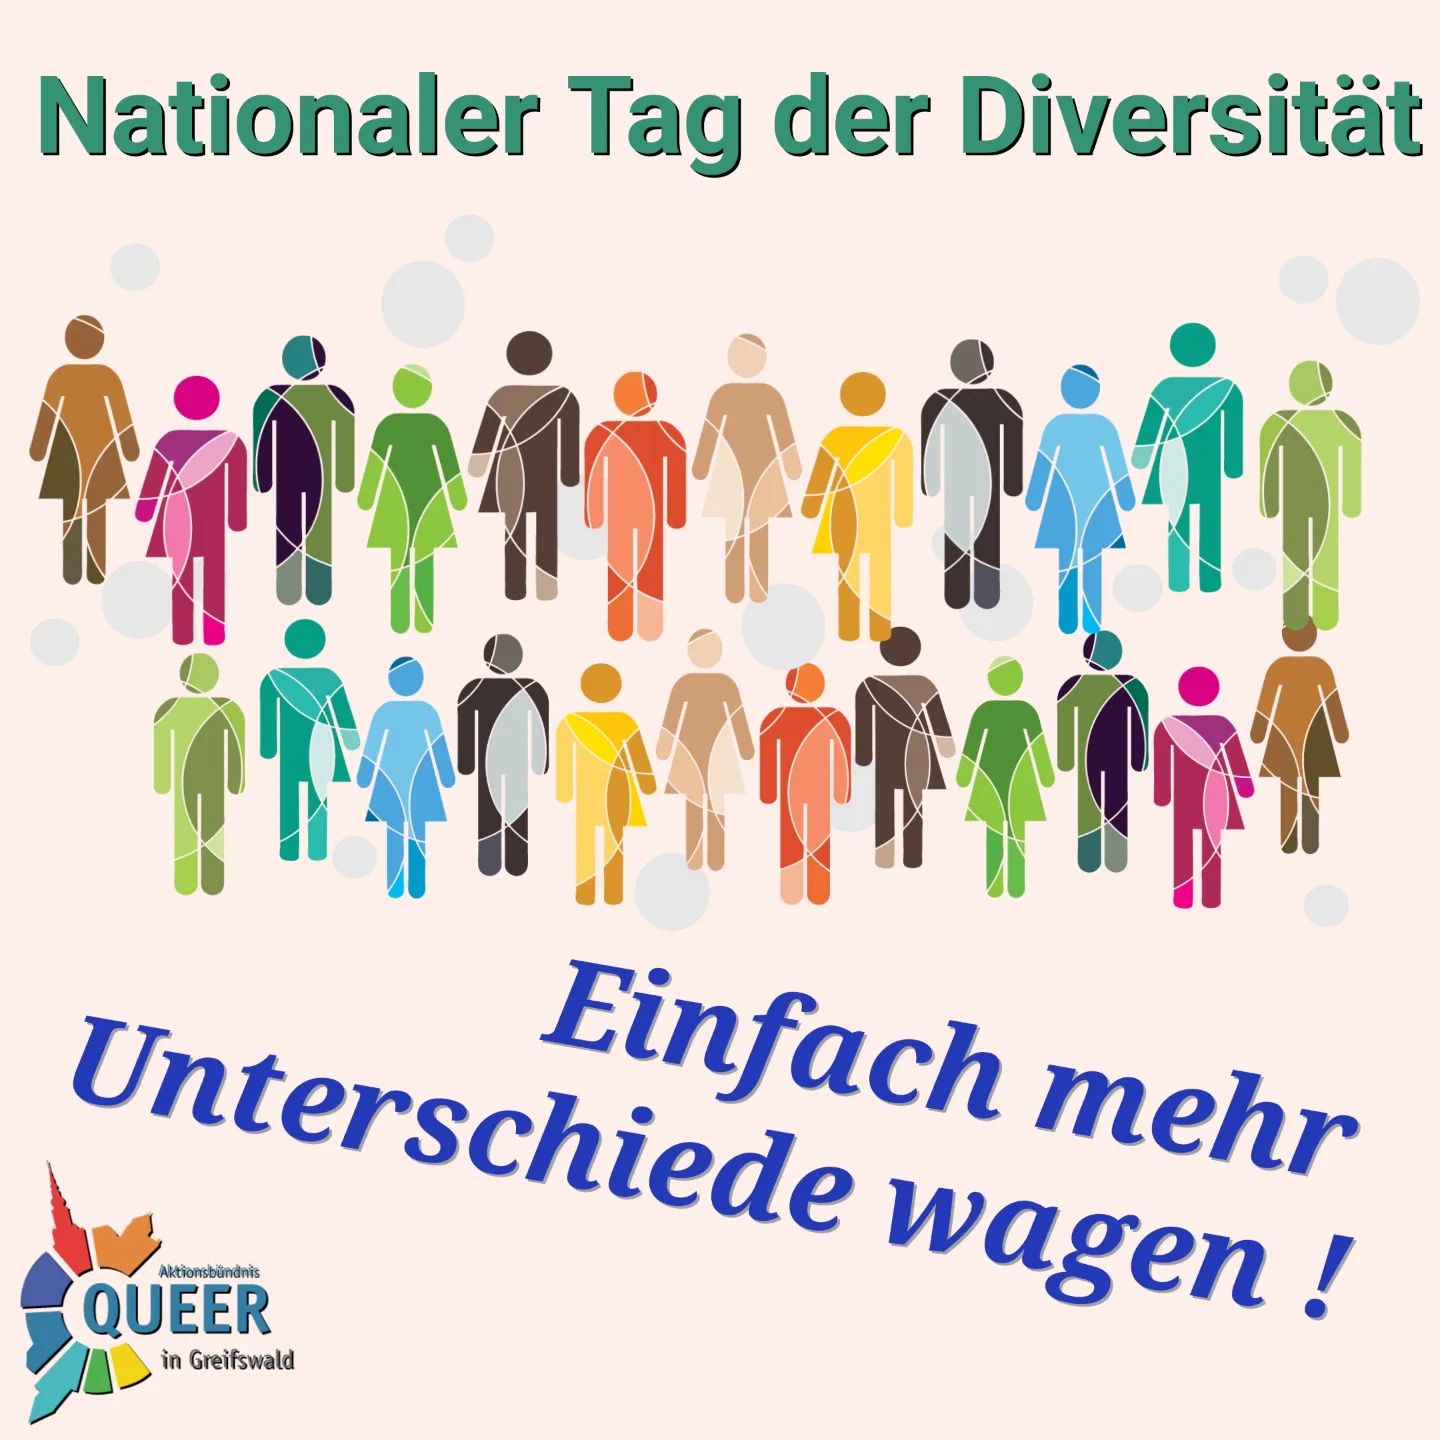 ❤️🧡💛💚💙💜
Heute ist deutscher Diversity-Tag

Also ein sehr guter Tag um daran zu erinnern: auch wir in der LSBTIQ*-Community sind in keiner homogenen Gruppen. Wir sind ein vielfältiger Haufen und das ist auch gut so. Denn Vielfältigkeit ist unsere Stärke. 

Wir sollten uns dennoch nicht alle labeln lassen, sondern unseren eigenen Weg gehen und uns selbst so wohl fühlen, wie wir nun Mal sind.
Label hin - Label her

Ist doch vollkommen egal - wir sind alle anders und alle toll so

#queer #queermv #queer_hgw #queerinmv
#pride #csd #csddeutschland #csdnord #lsvd 
#gay #lesbisch #schwul #bi #trans #inter #andersabernormal 
#Diversität #dibersity #diversityday #diversitytag